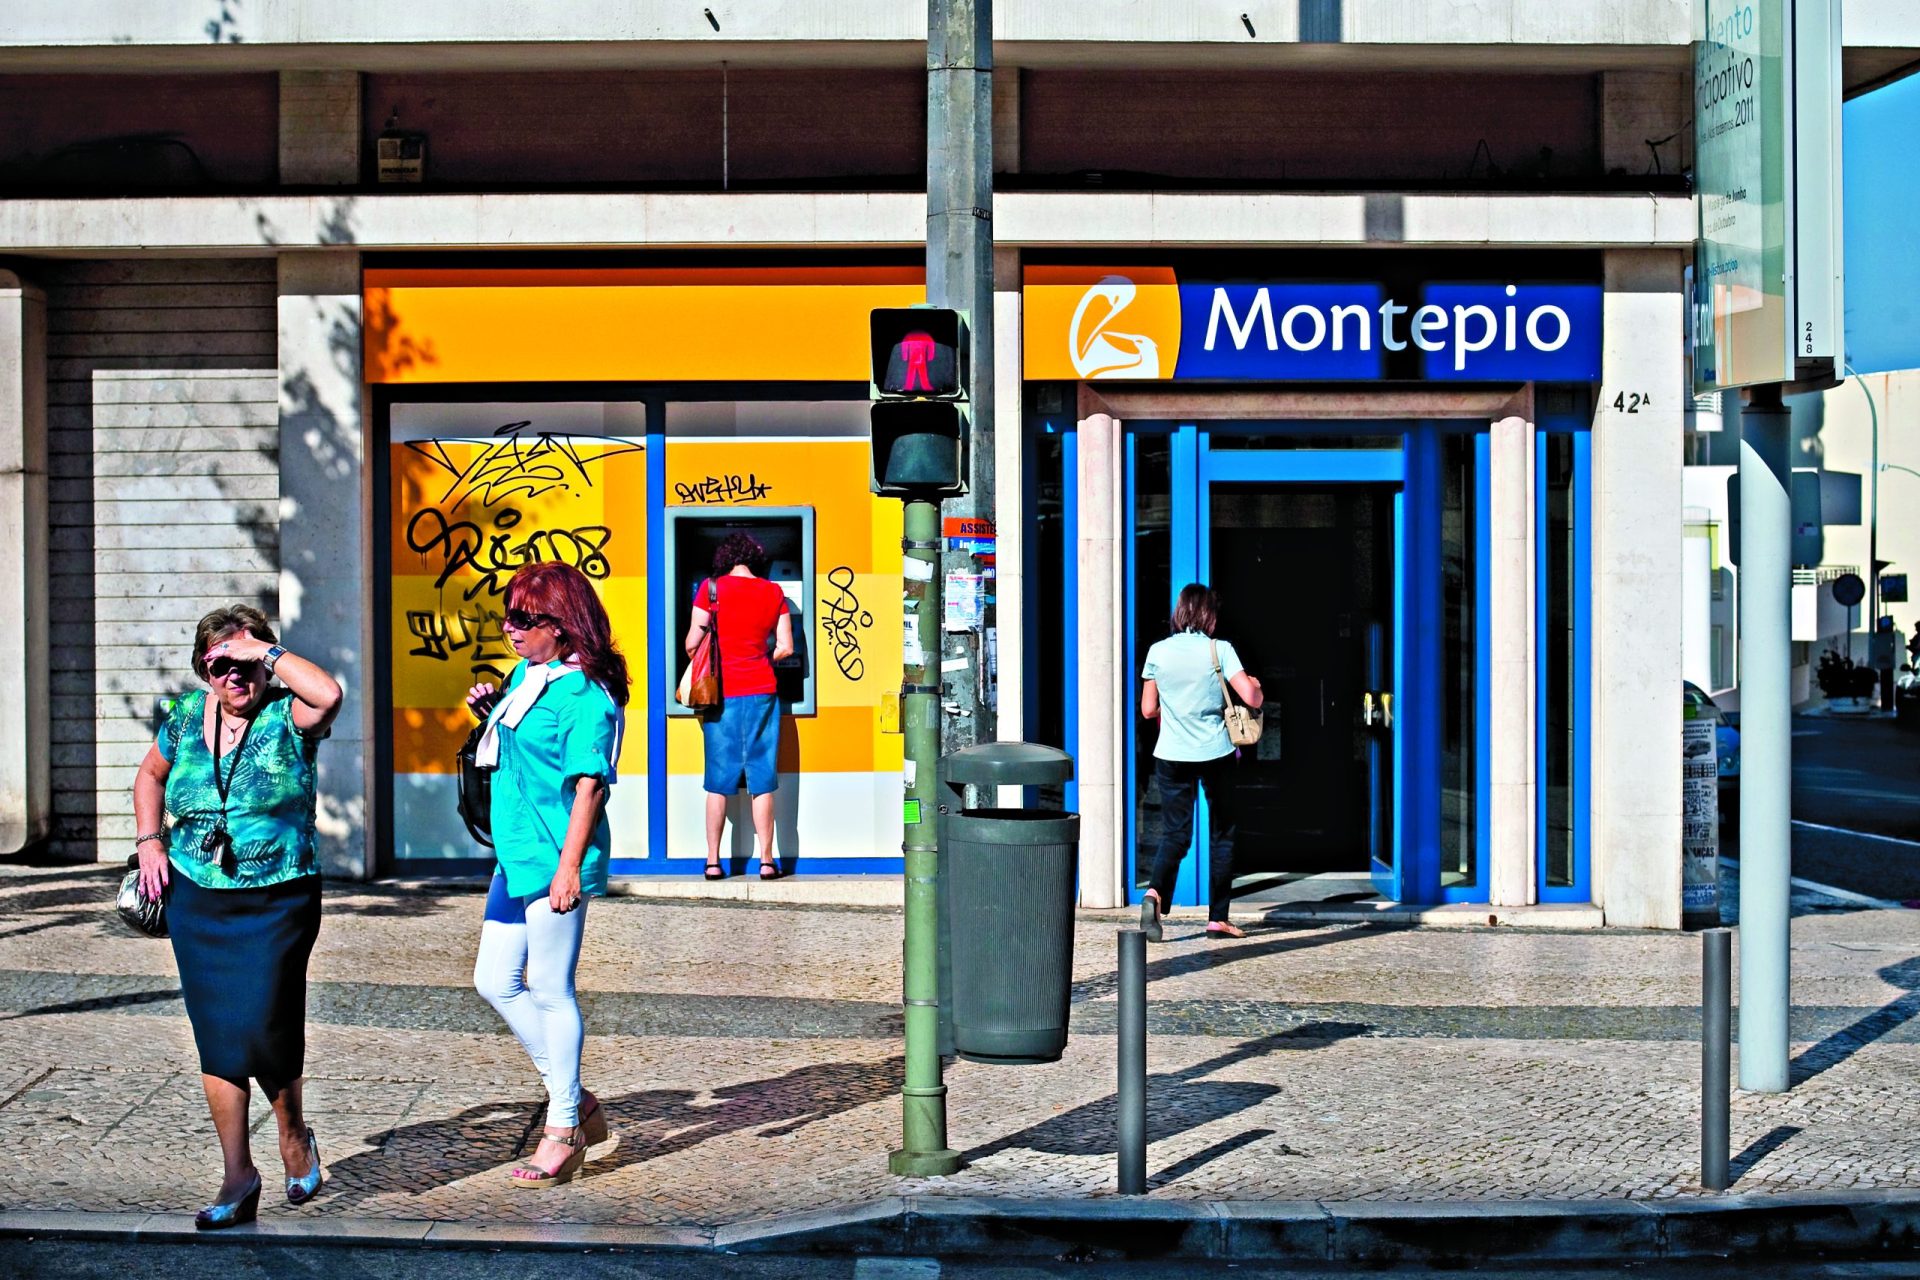 Associação Mutualista lança oferta para comprar ações do Montepio que ainda não detém